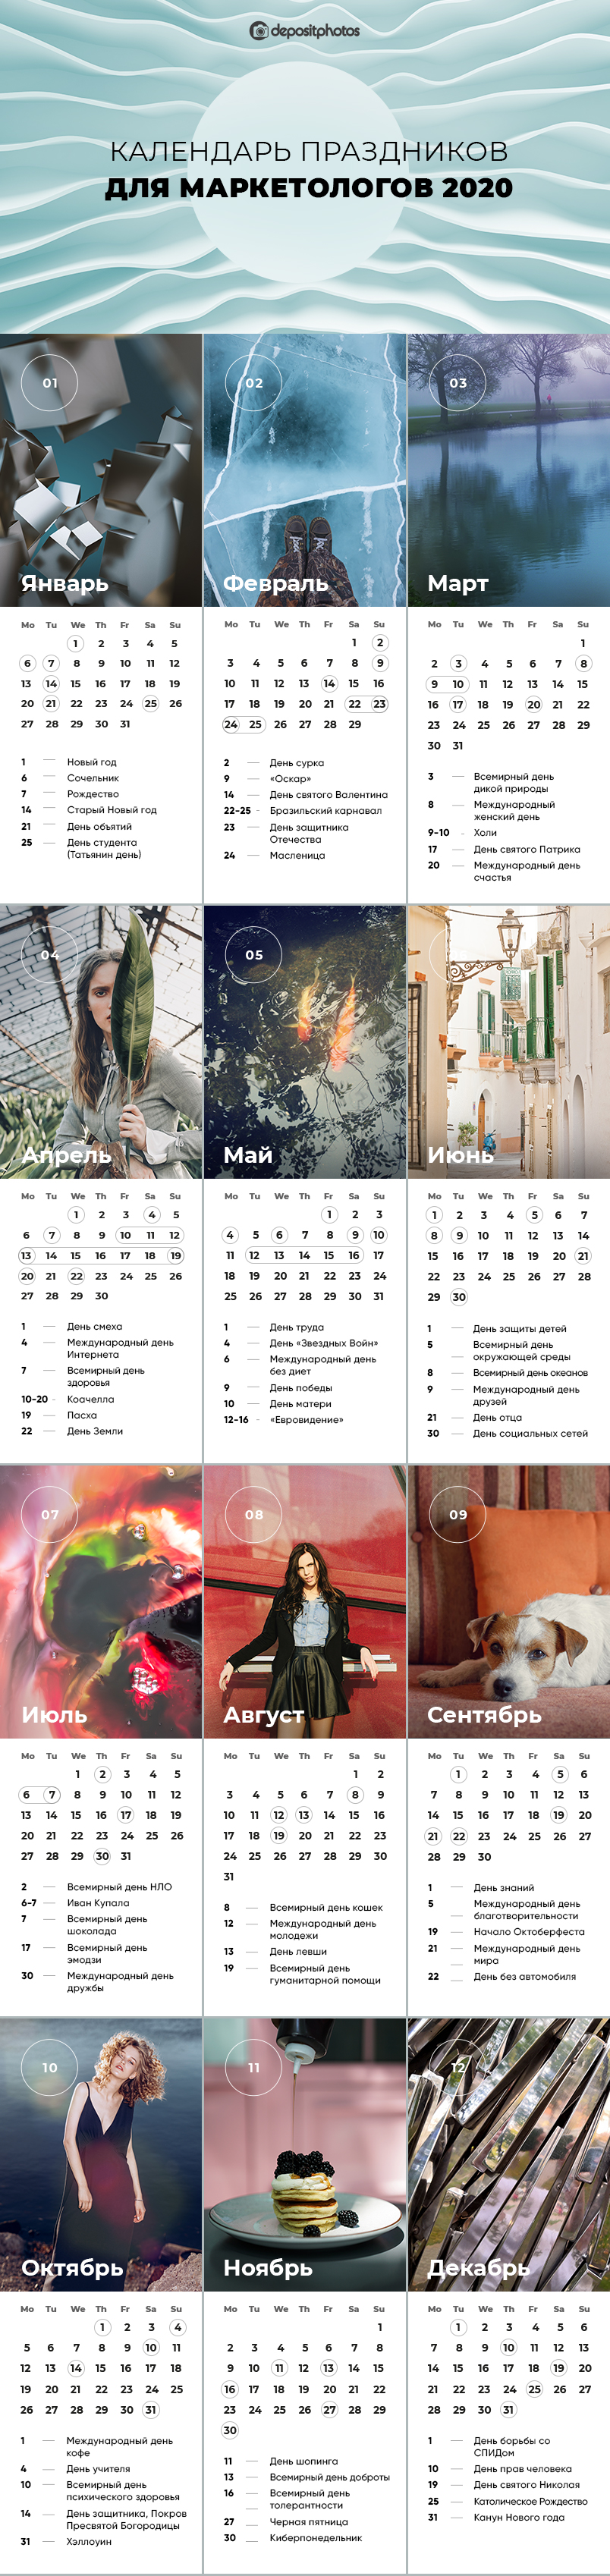 Календарь праздников для маркетологов на 2020 год